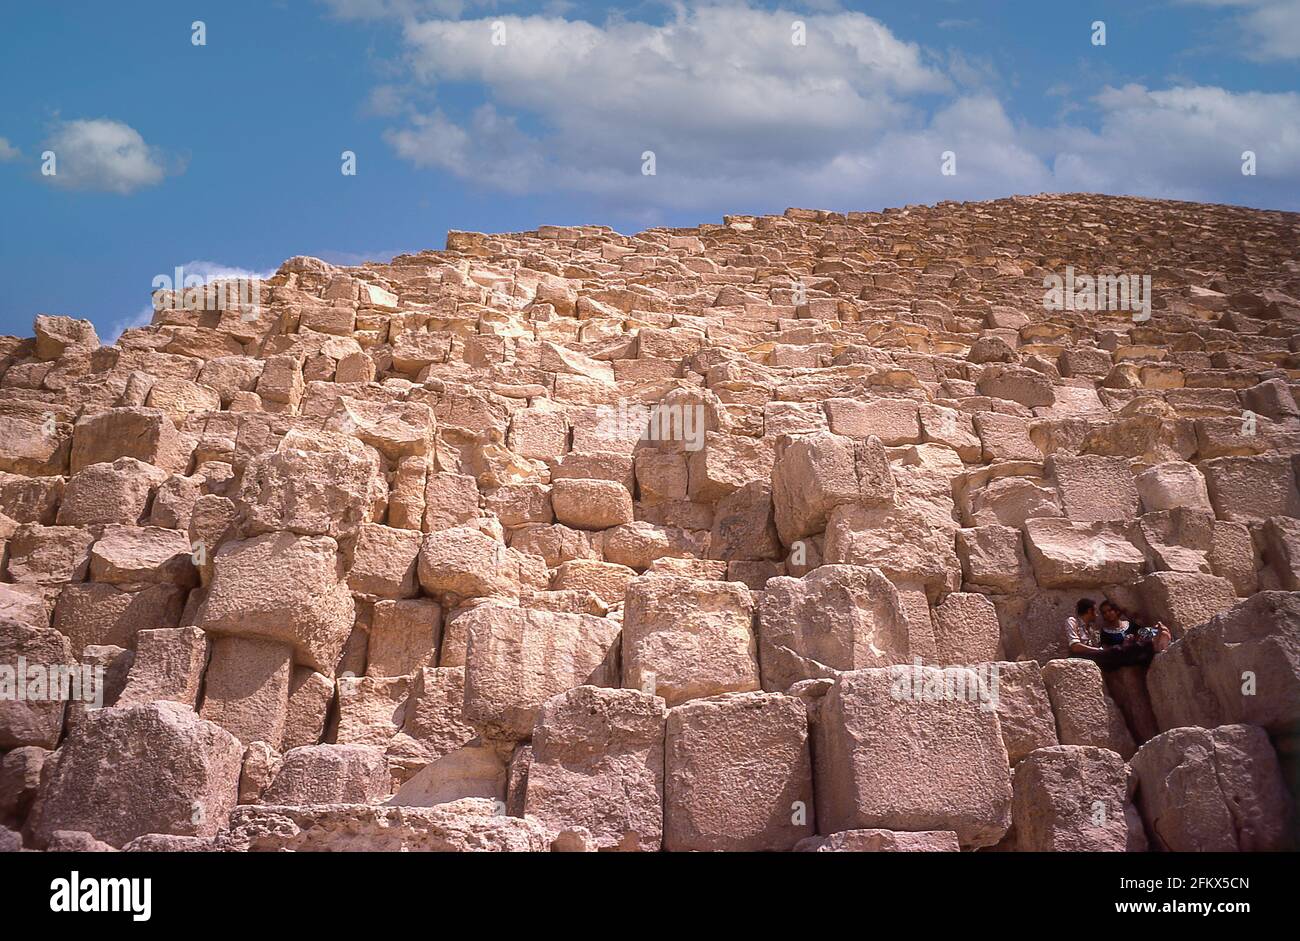 Die Basaltblöcke des Pyramidentempels, die große Pyramide von Gizeh, Gizeh, Gizeh Governate, Republik Ägypten Stockfoto